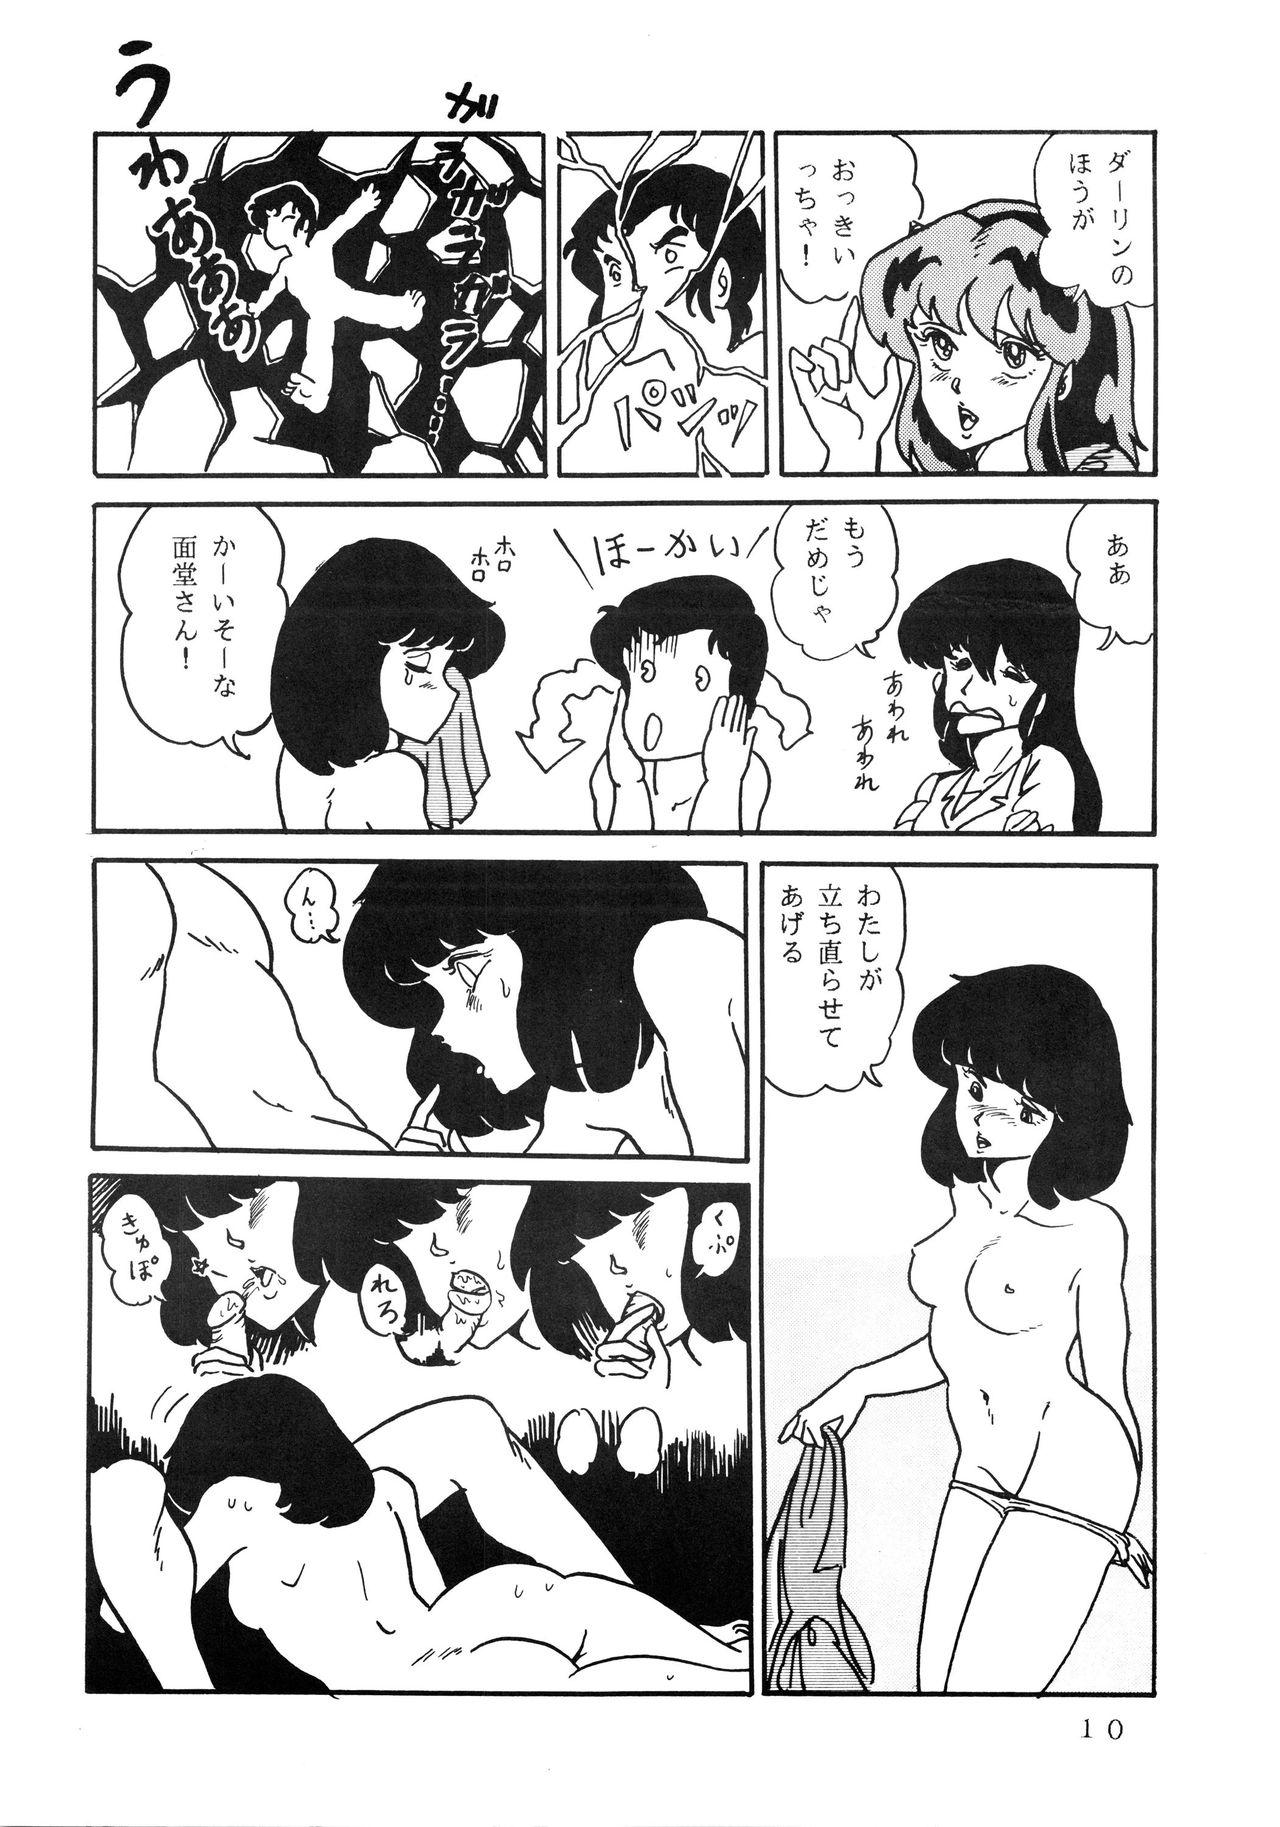 Cumshots Shijou Saiaku no LUM 4 - Urusei yatsura Gag - Page 10